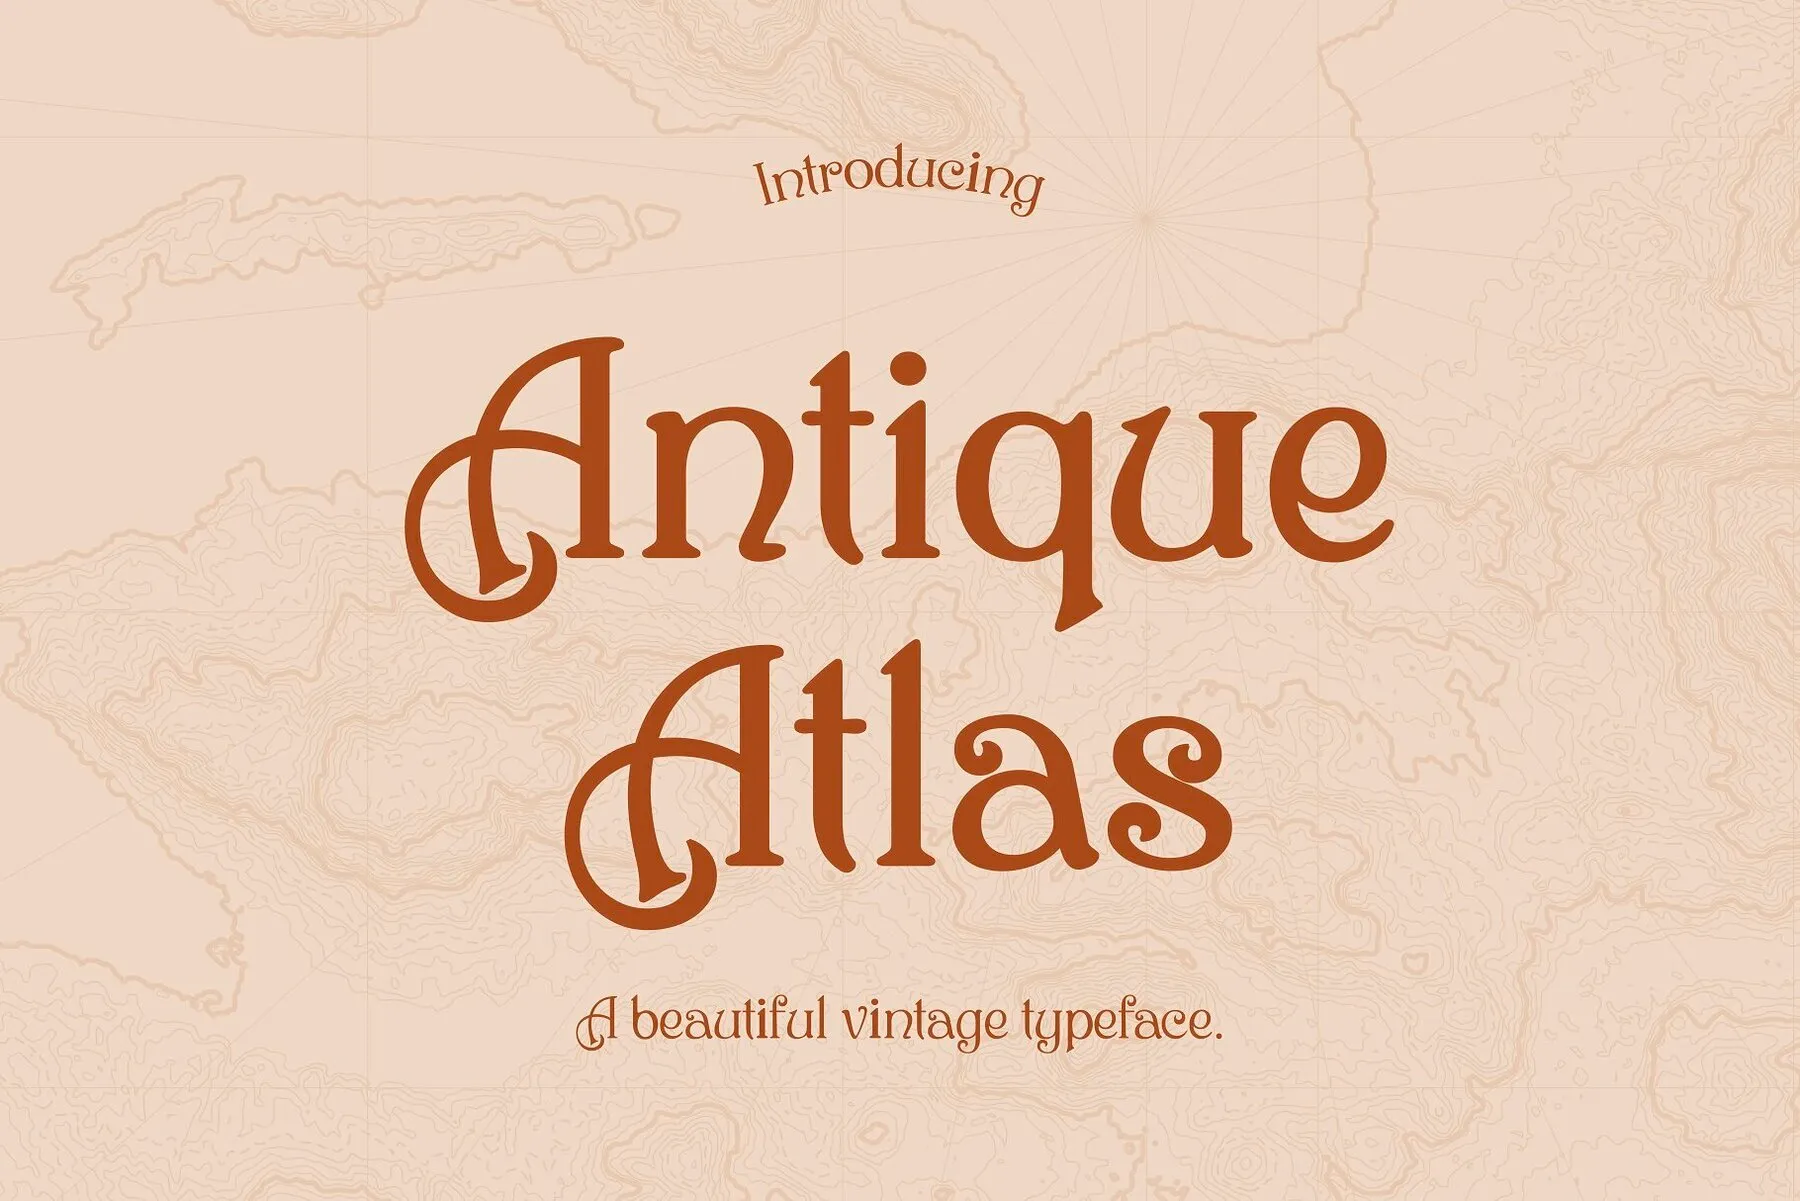 Antique Atlas